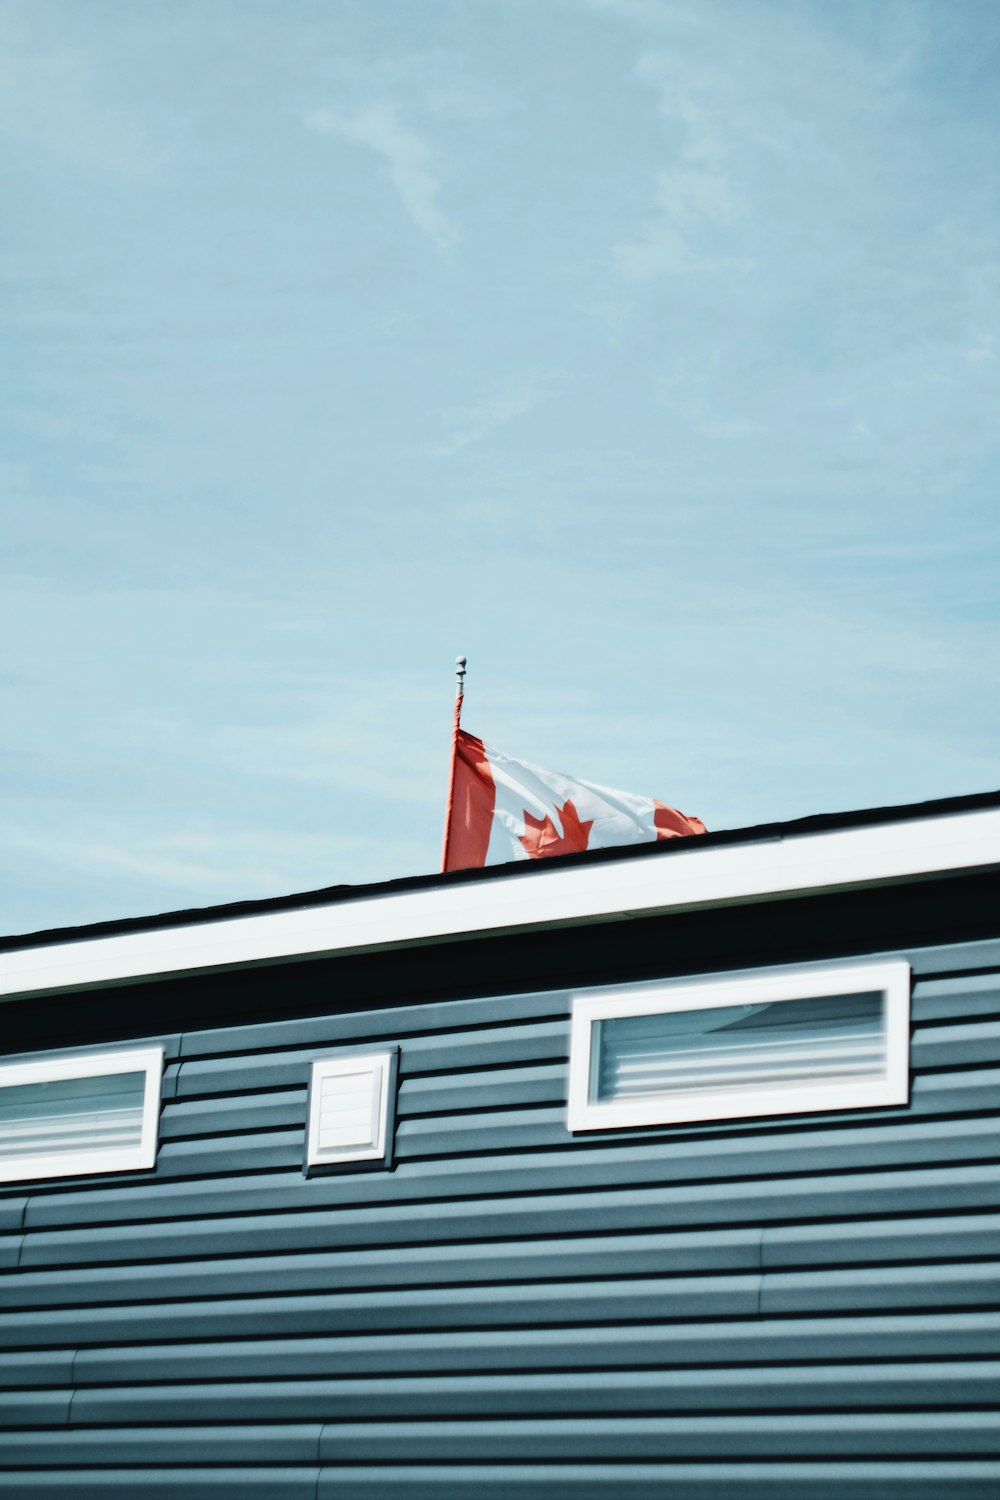 Canadian flag on pole